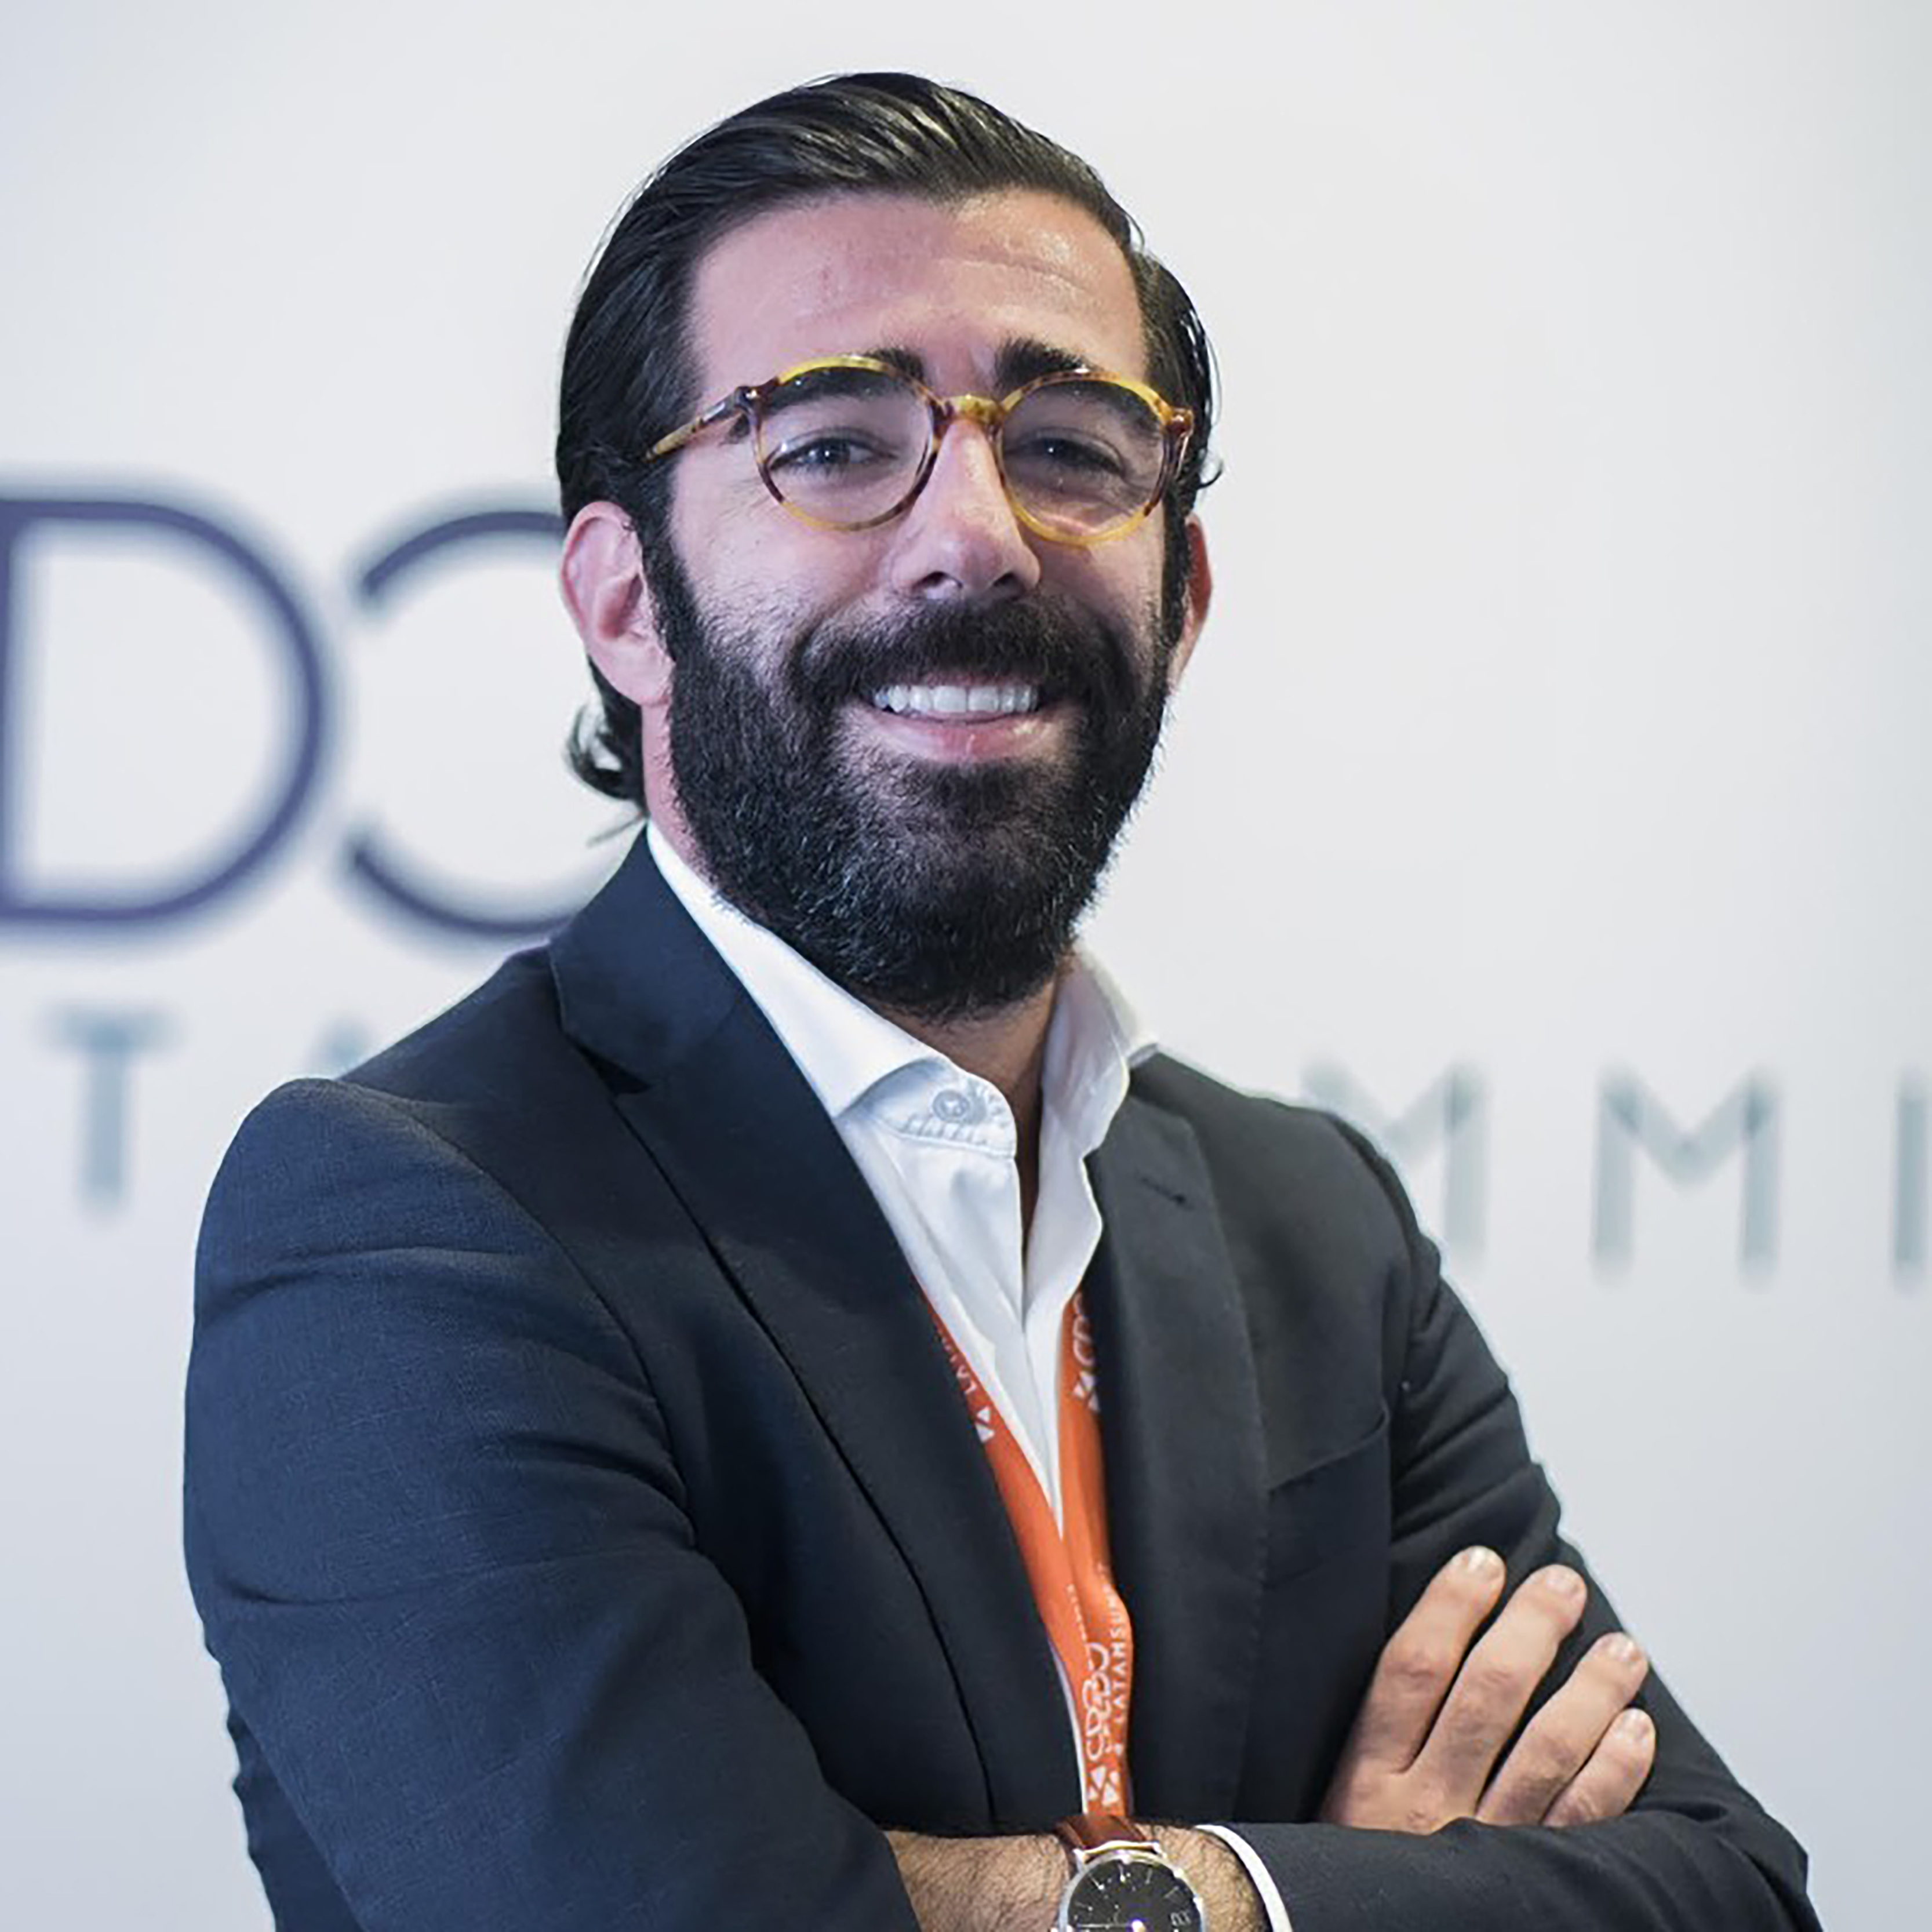 Moisés Dueñas, Data Management Lead at Keepler Data Tech